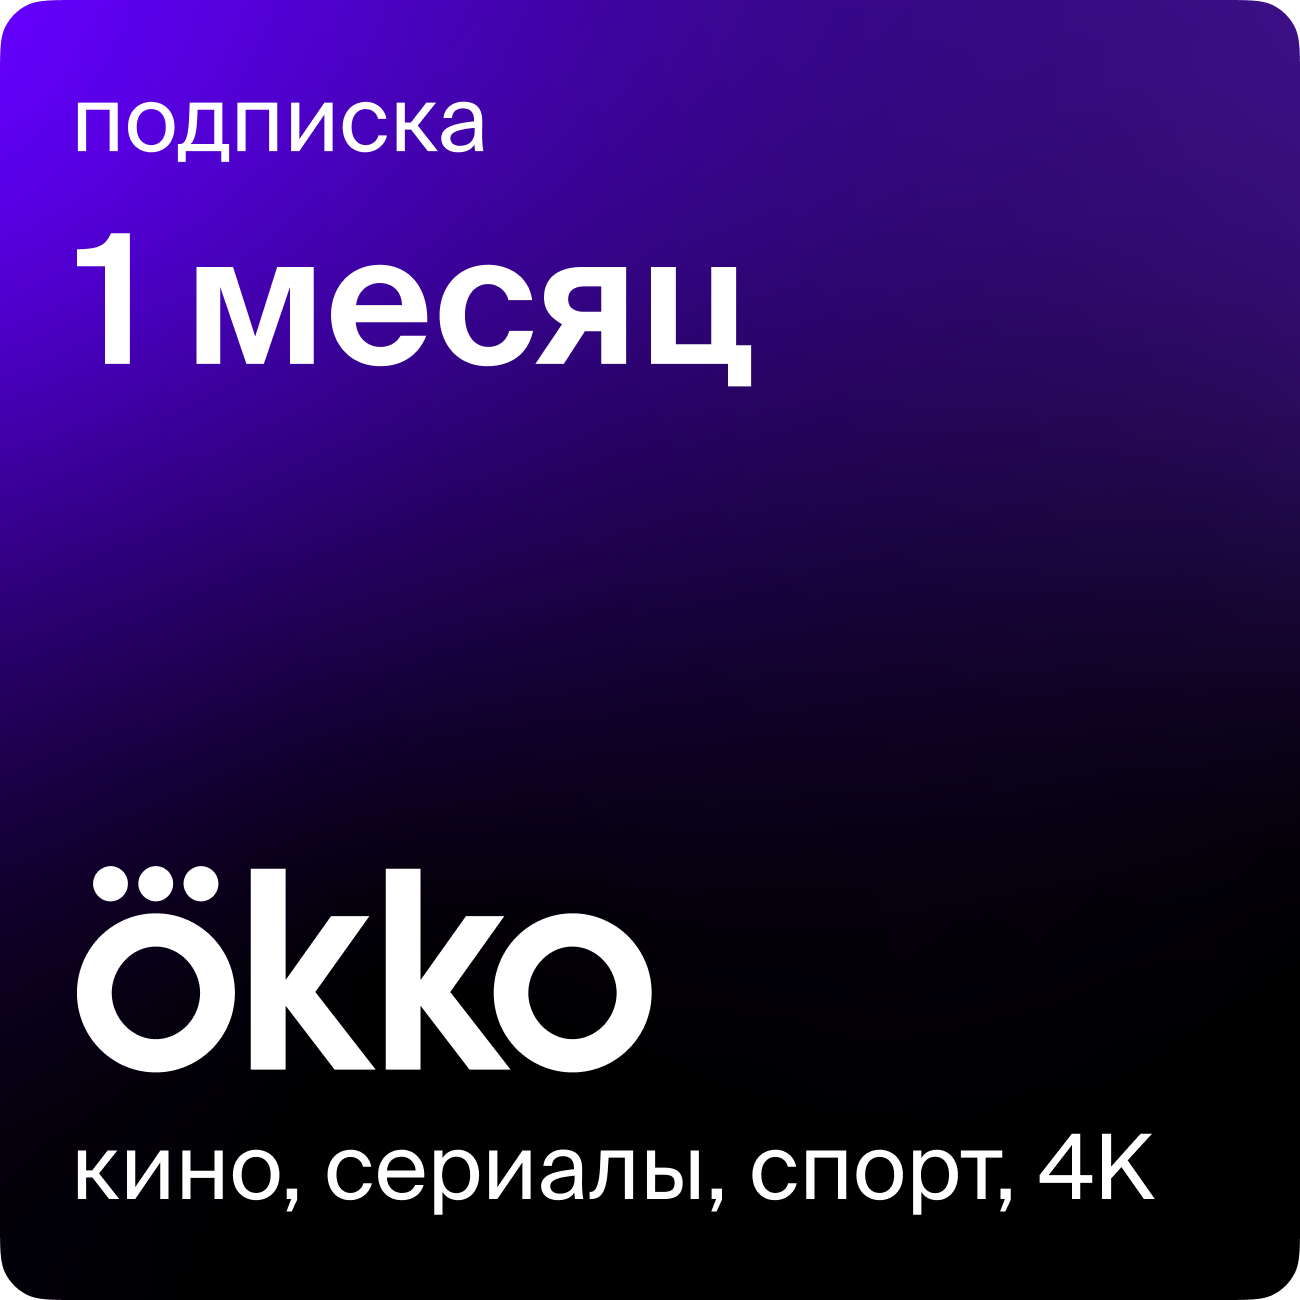 Подарок: Подписка оптимум на сервис Оkko на 1 месяц